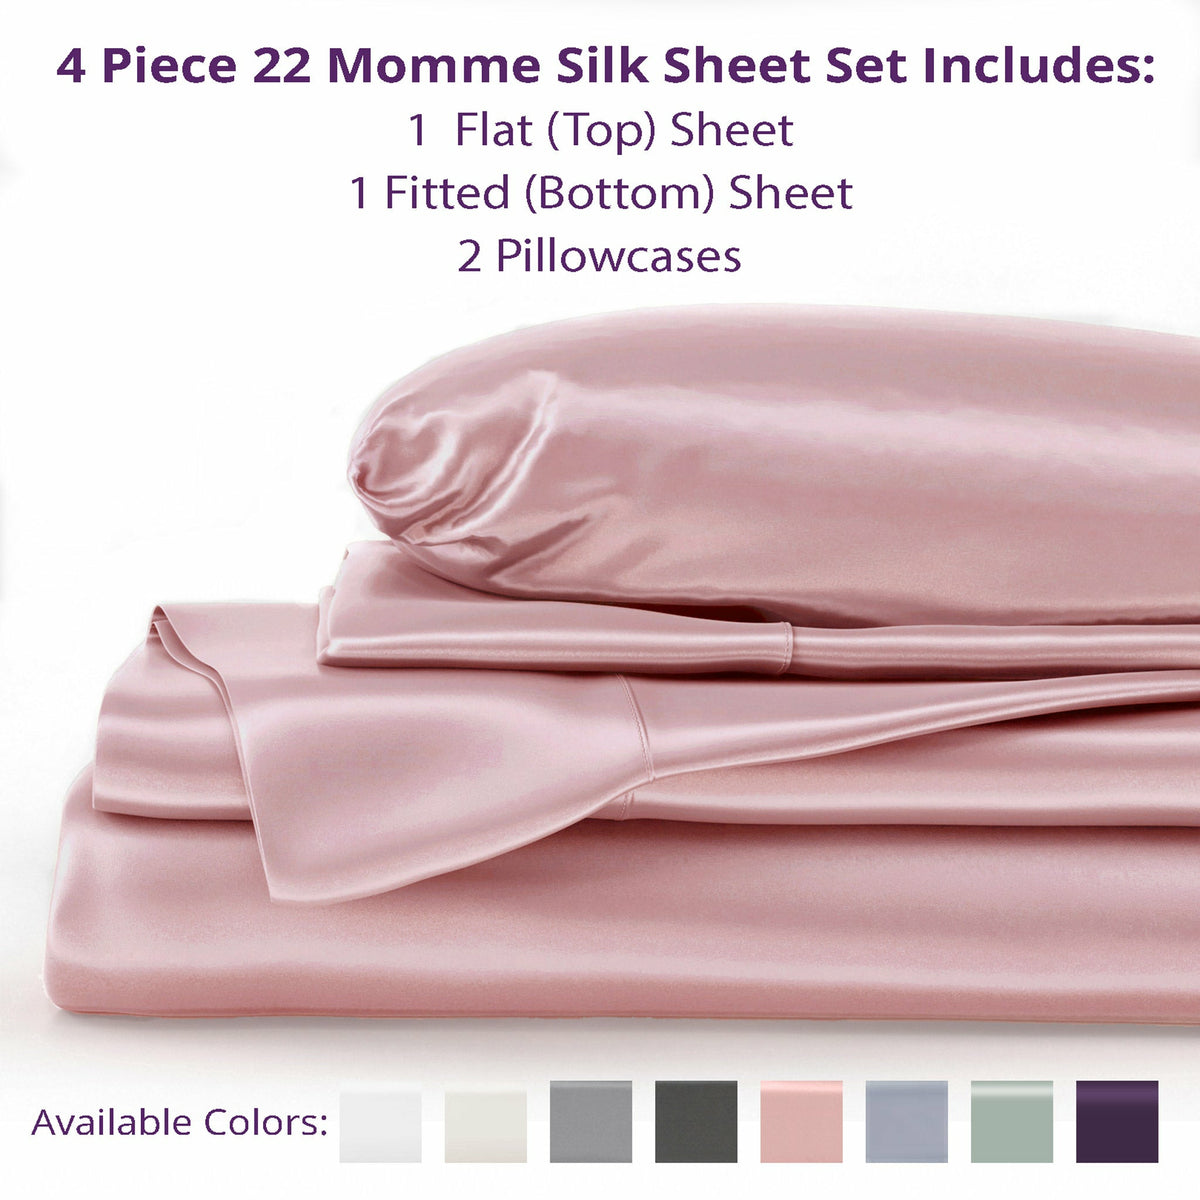 Mulberry Park Silks 22 Momme Silk Flat Sheets Inclusions Rose Quartz Fine Linens